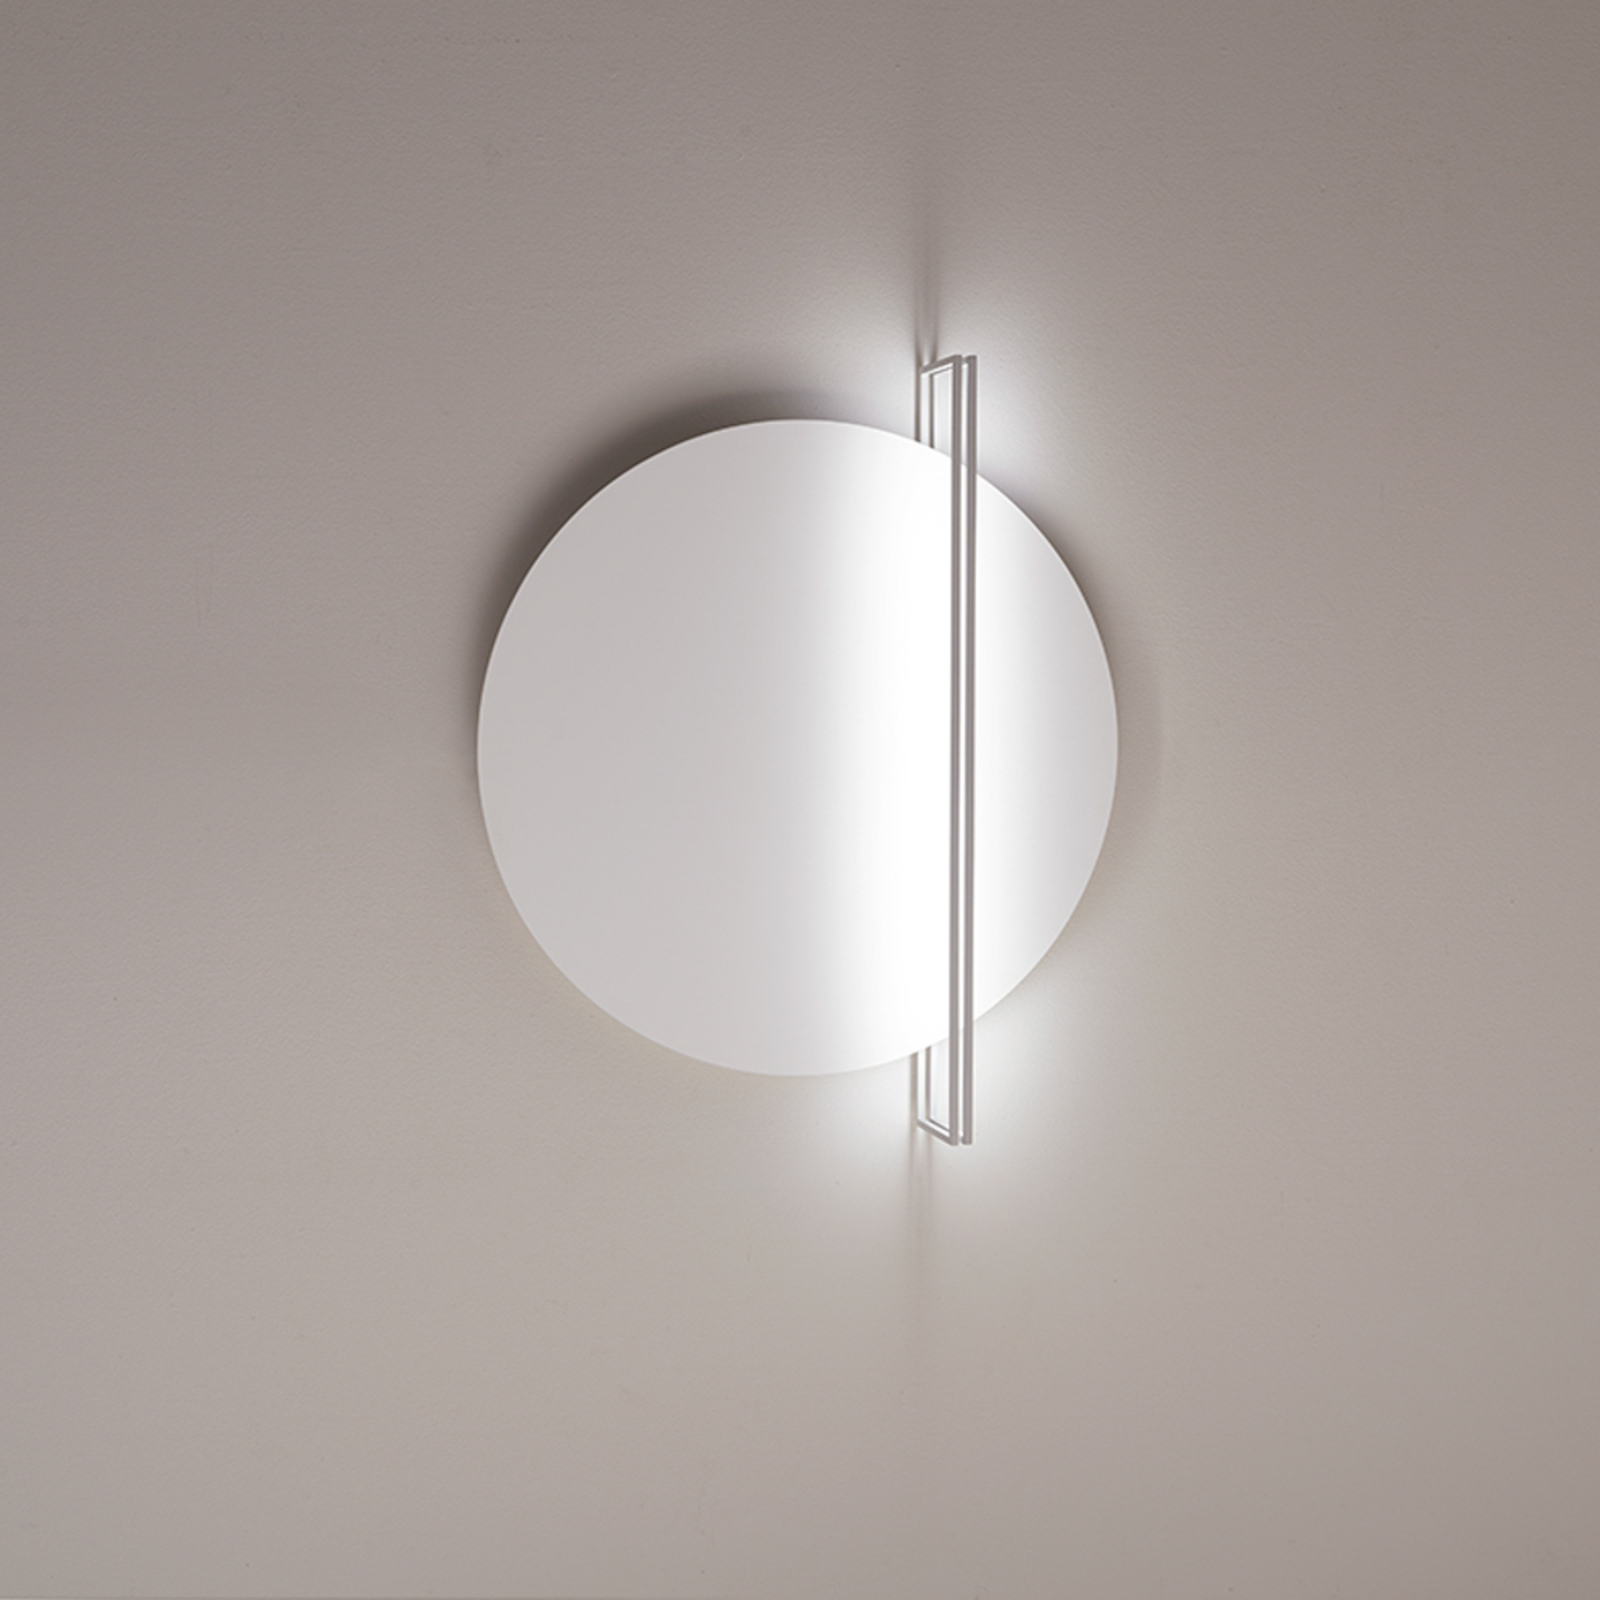 ICONE Essenza lampa sufitowa 927 Ø70cm biały/biały